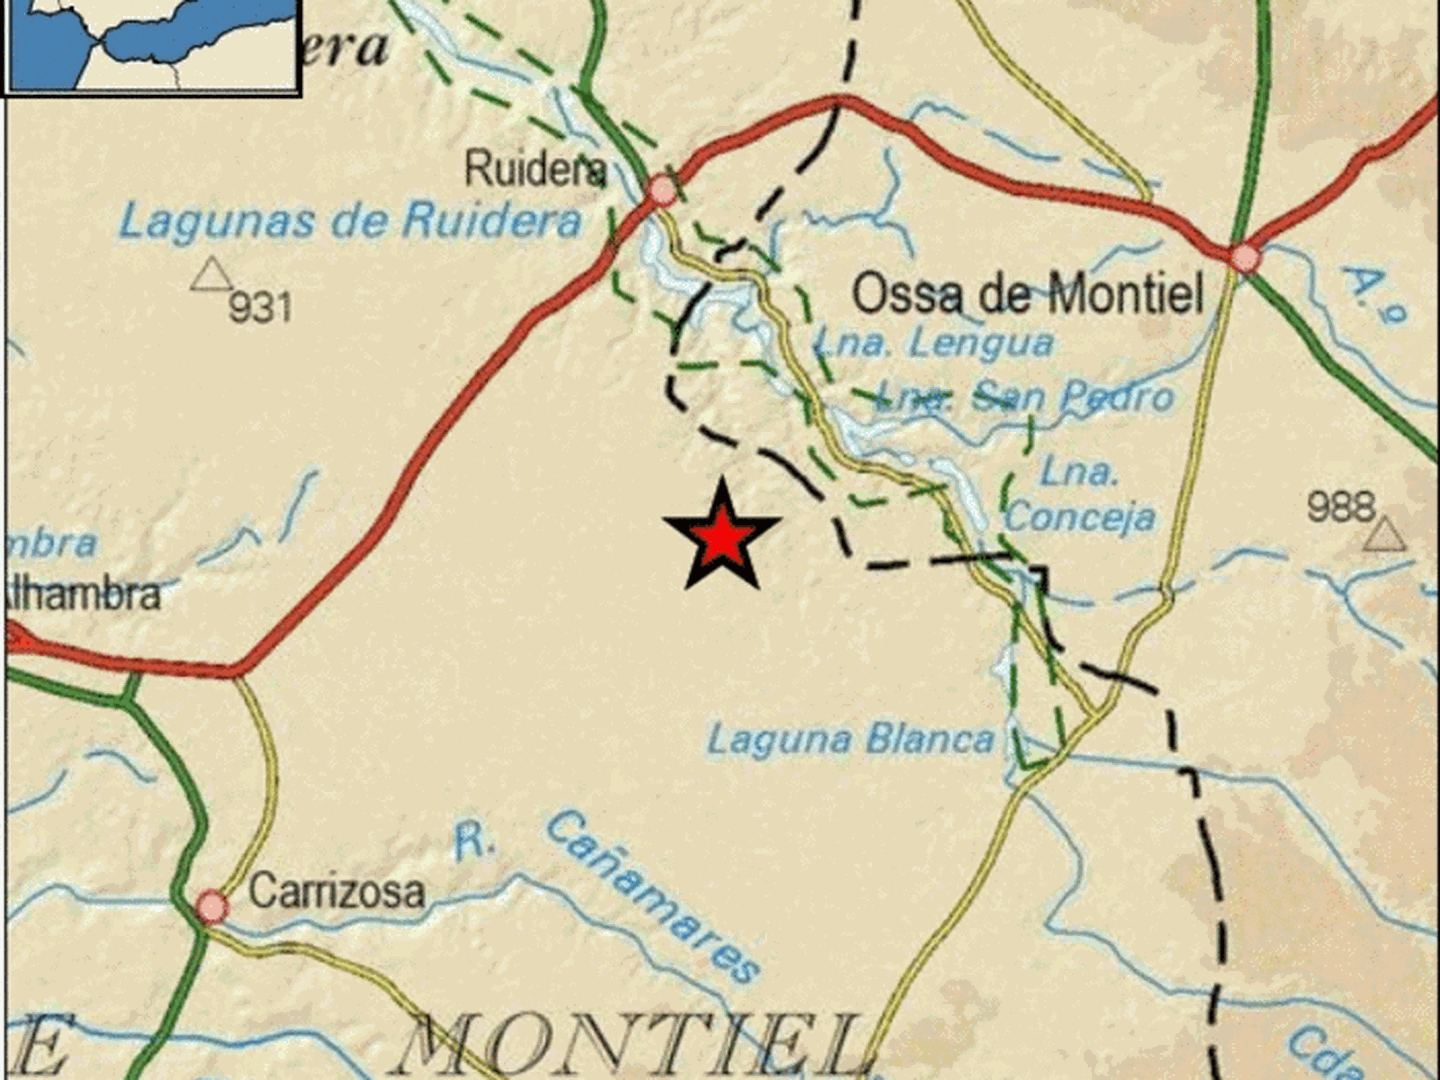 Epicentro del terremoto en las proximidades de Carrizosa. (IGN)